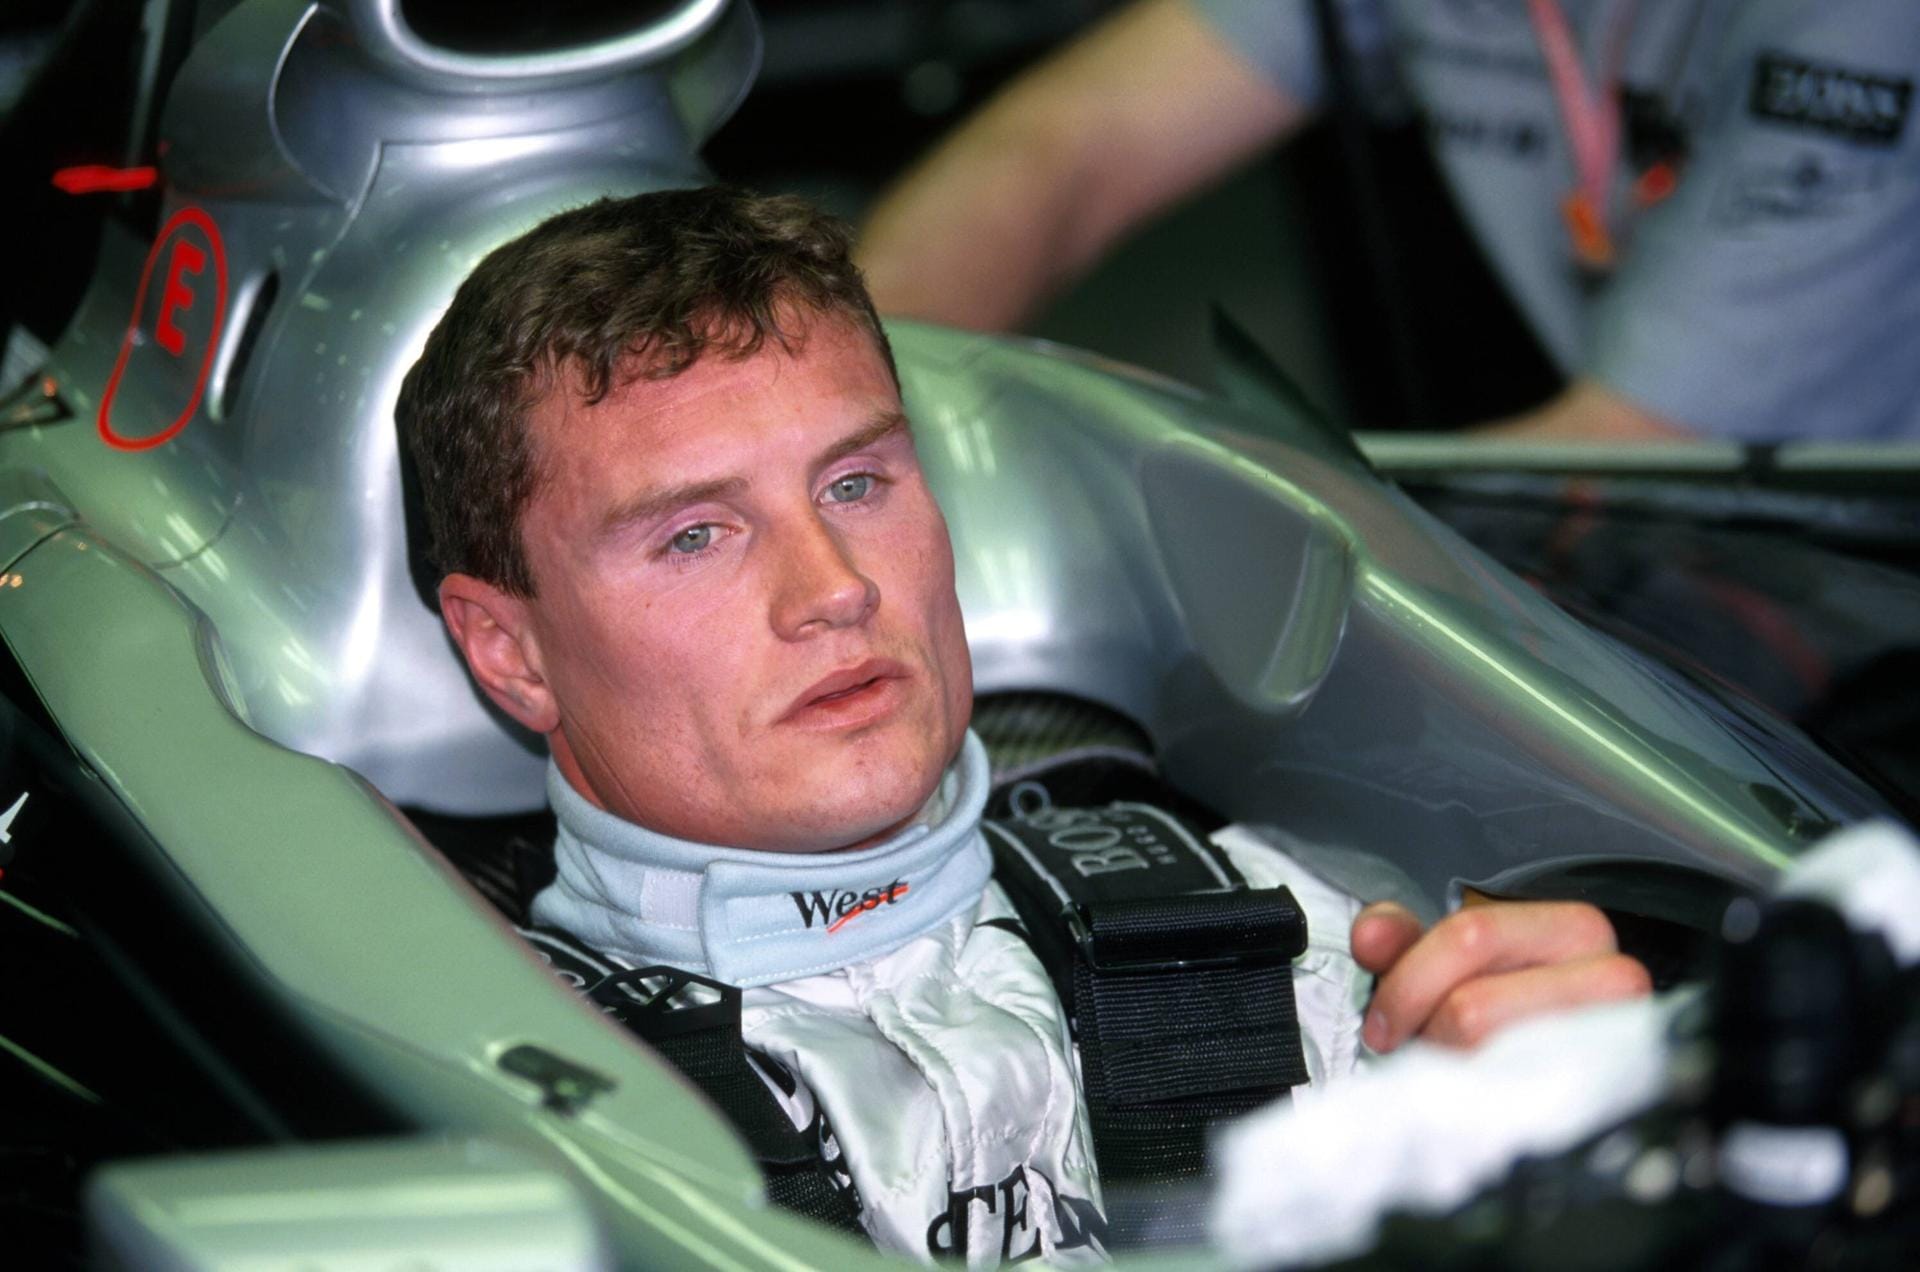 Häkkinens langjähriger Mercedes-Teamkollege David Coulthard (hier in der Saison 1999) war noch länger in der Formel 1, fuhr von 1994 bis 2008 in der Königsklasse. Unvergessen die Kollision mit Michael Schumacher beim Großen Preis von Belgien 1998, als "Schumi" danach wütend in die Mercedes-Box stürmte, um den Schotten zur Rede zu stellen. Größter Erfolg: Vizeweltmeister 2001.